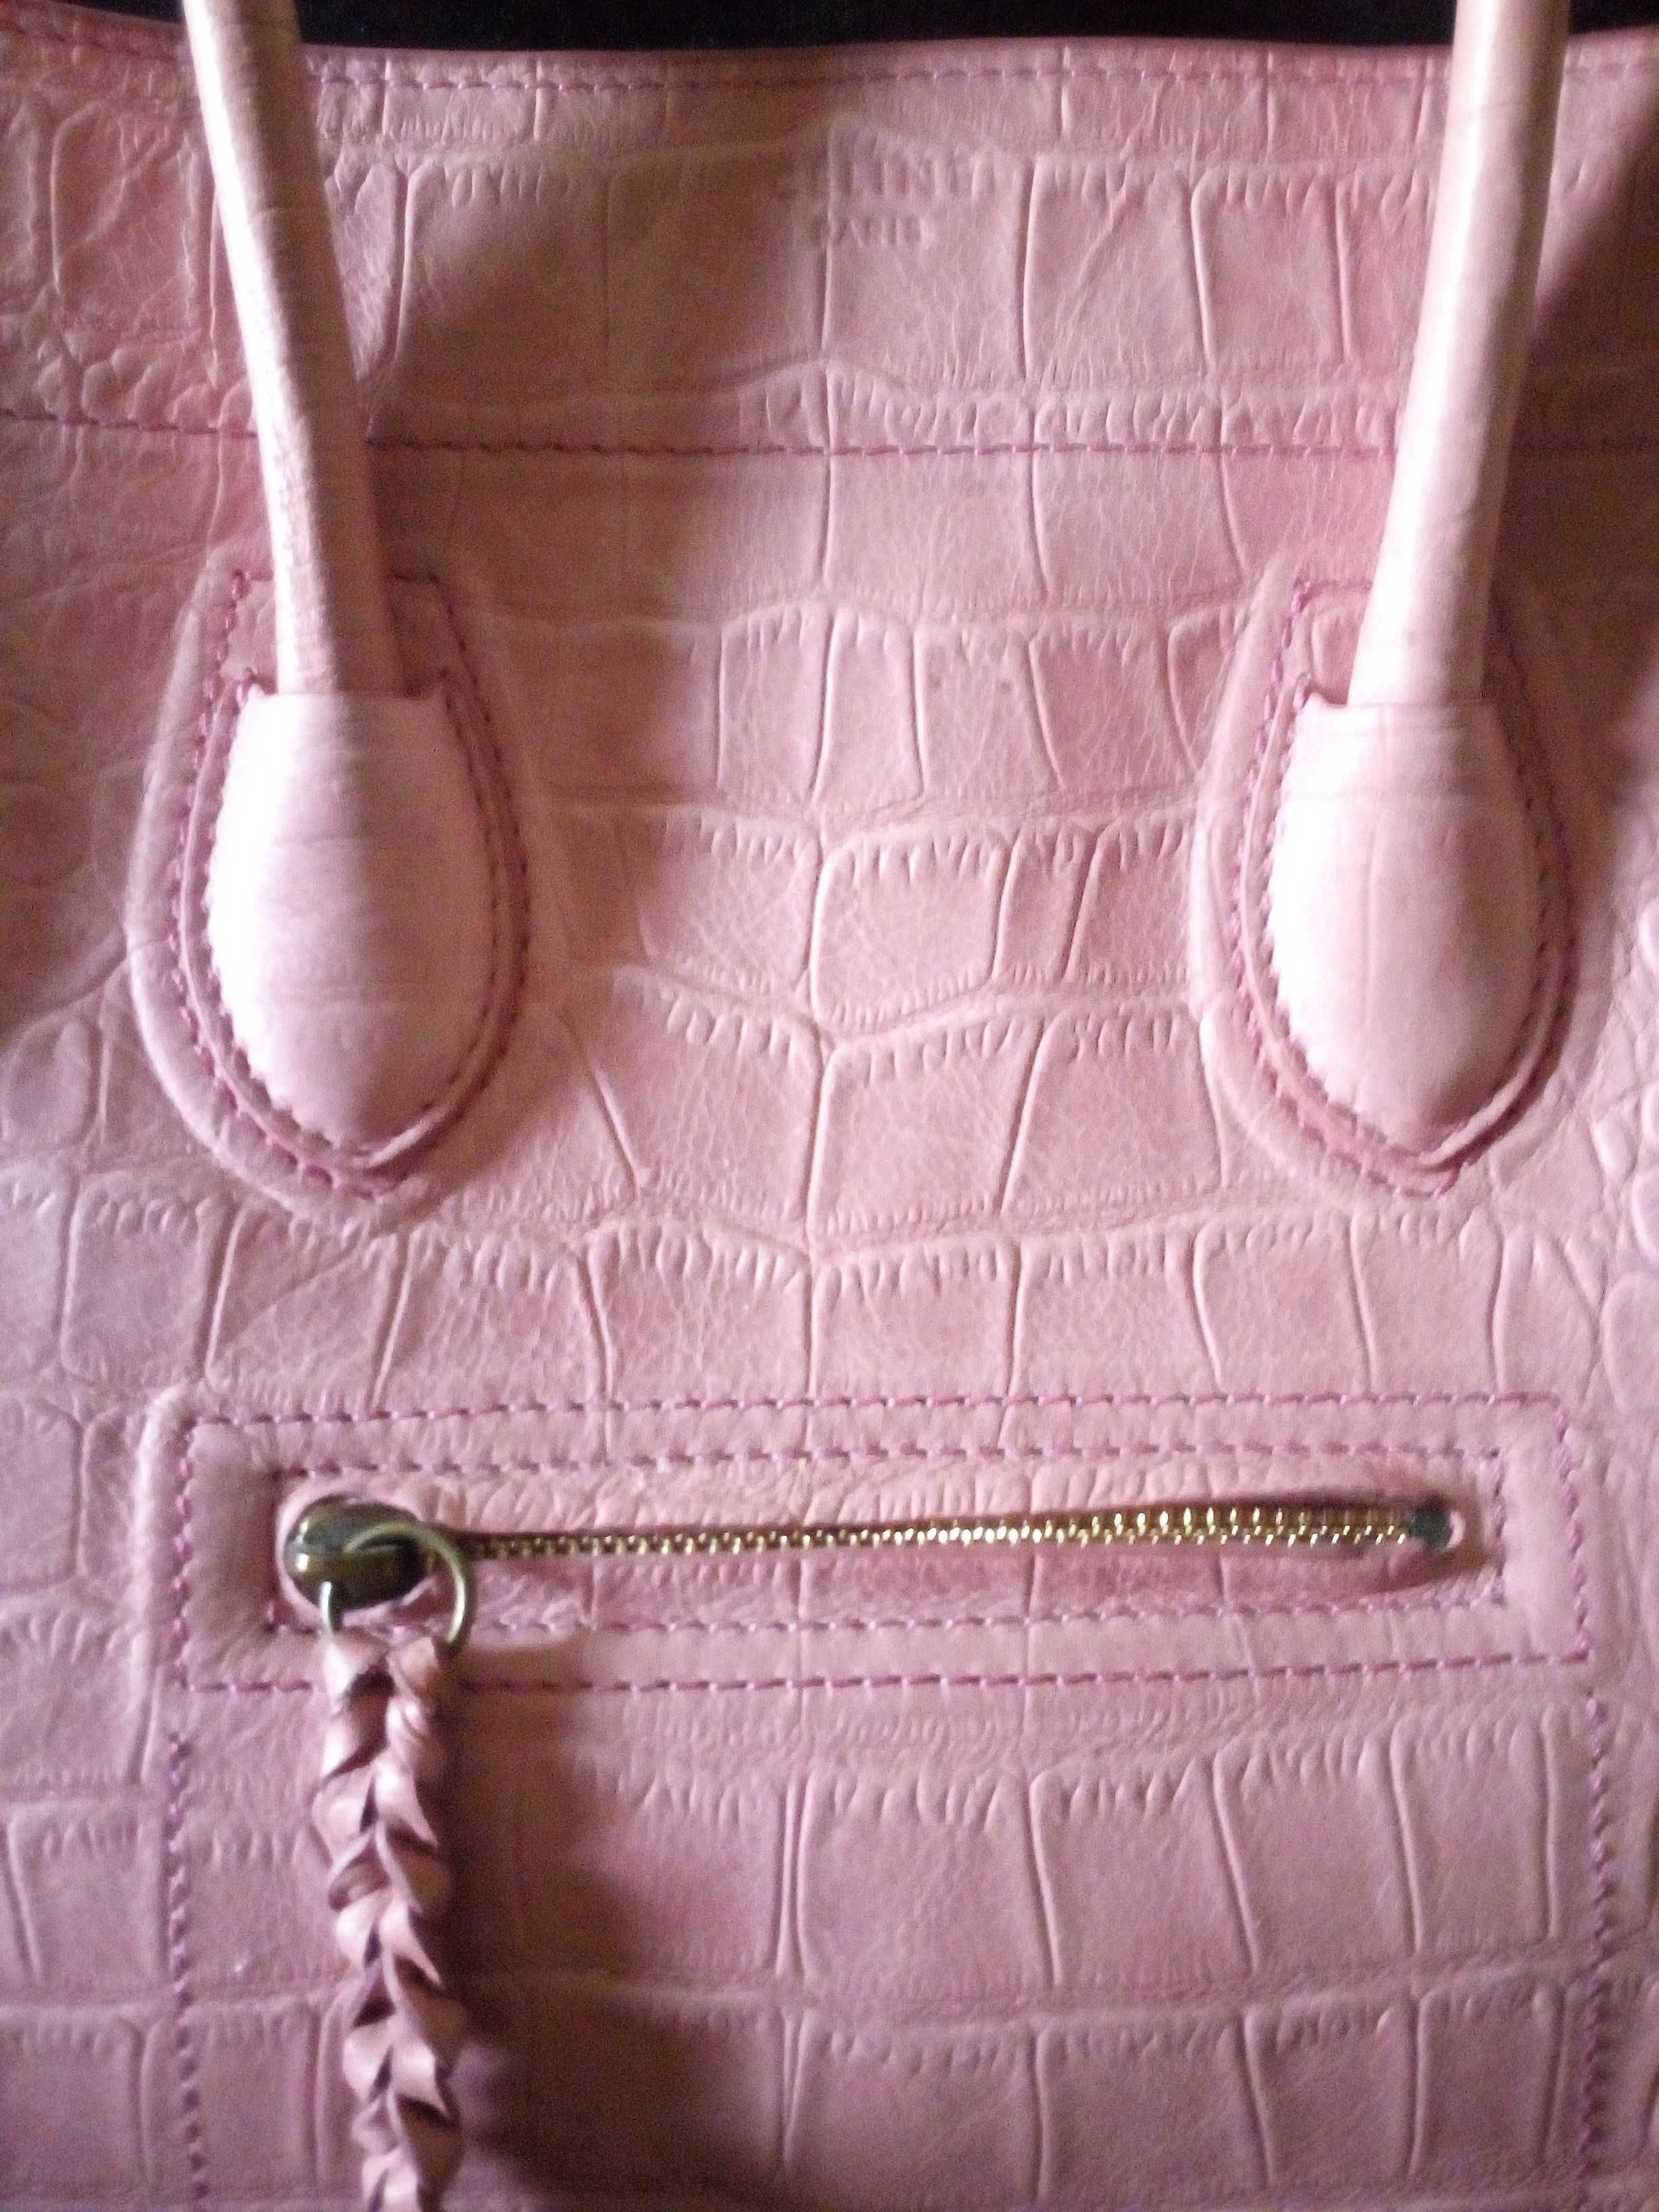 Велика шкіряна рожева сумка / Кожаная розовая сумка (большая)